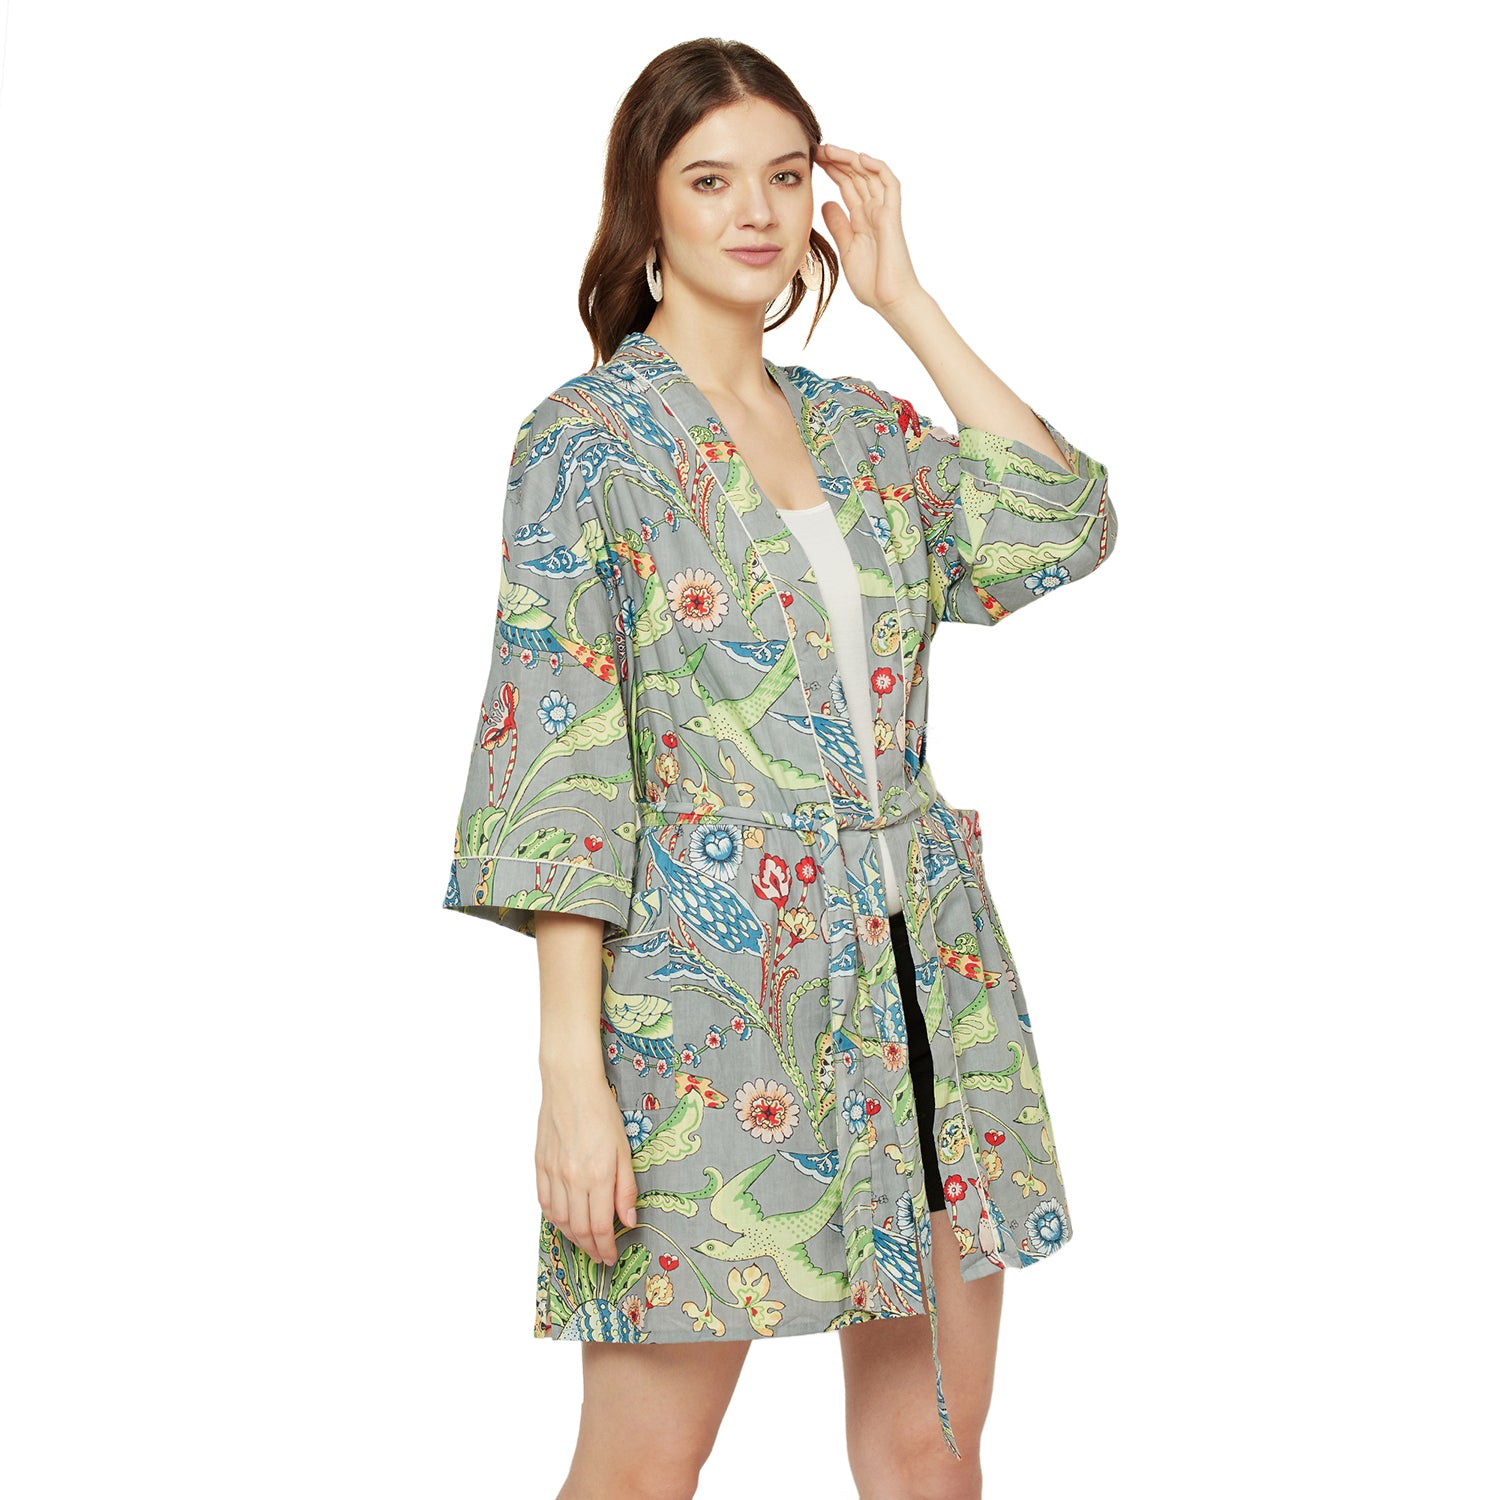 'Wings of Wonder' 100% Cotton Kimono Robe